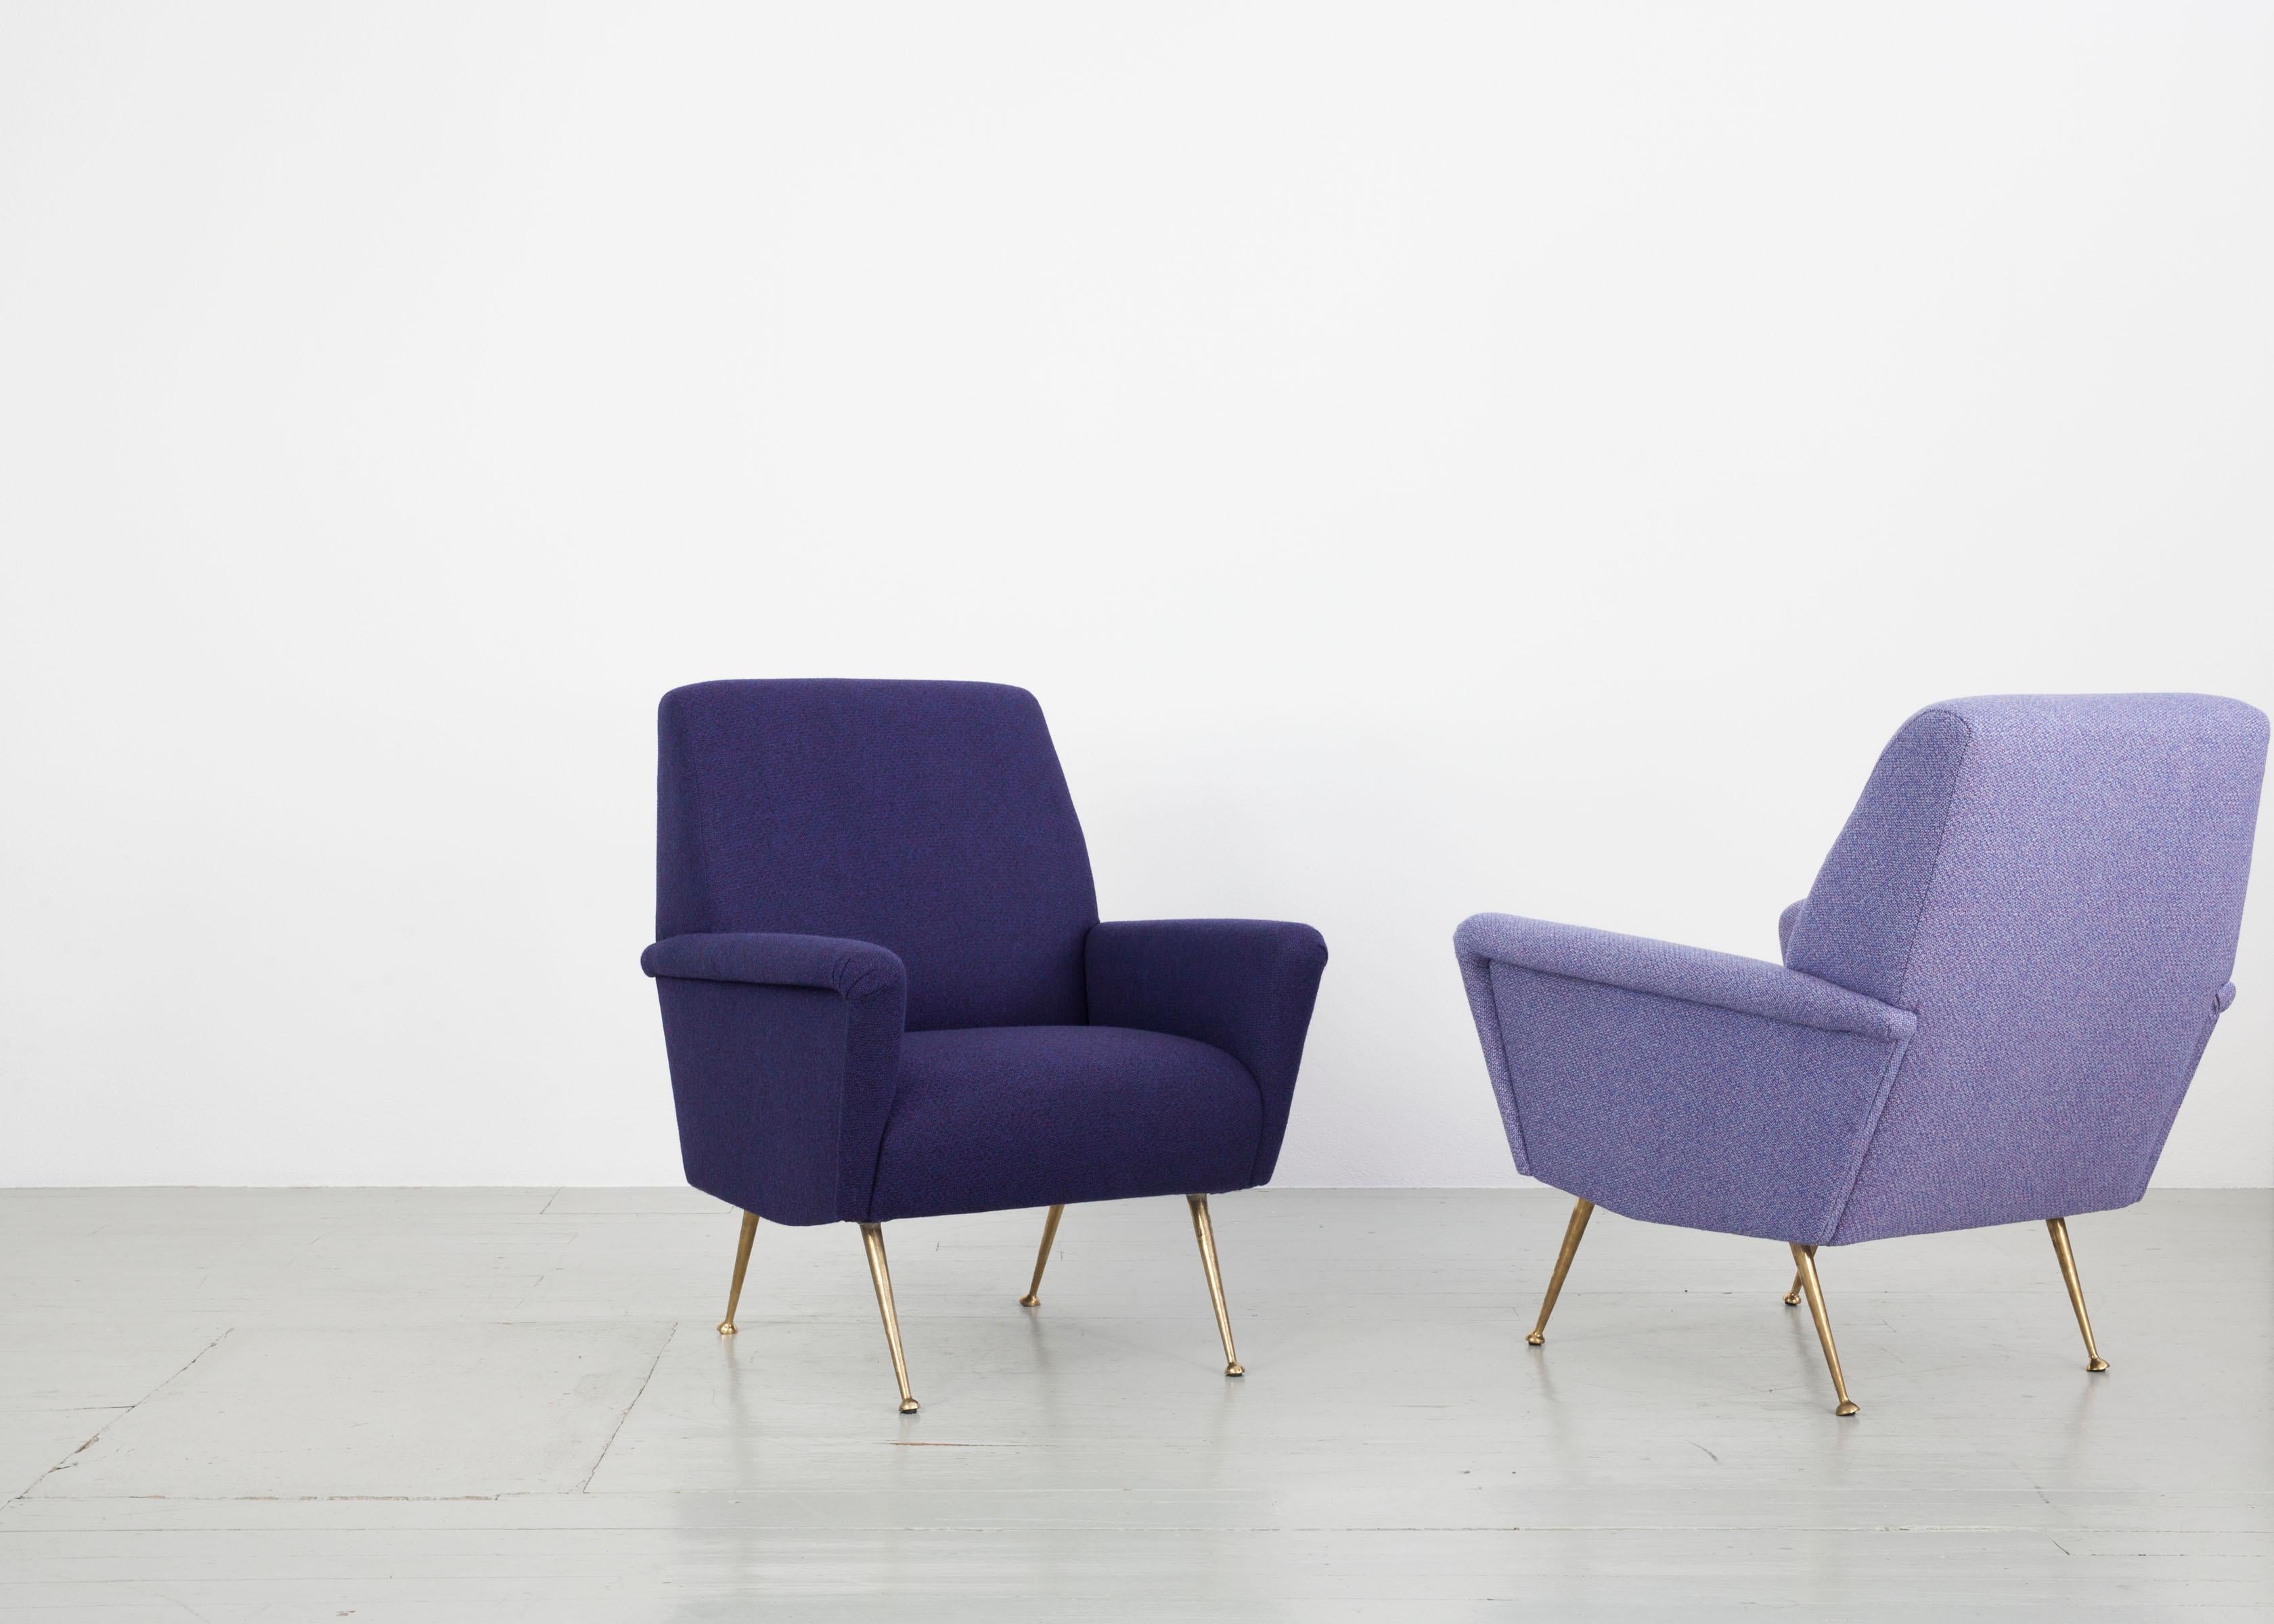 Cette paire de fauteuils a été fabriquée en Italie dans les années 1950. Les deux meubles ont été retapissés avec un tissu en laine de la société Backhausen dans des tons violet clair et violet foncé. Le corps est soutenu par des pieds de chaise